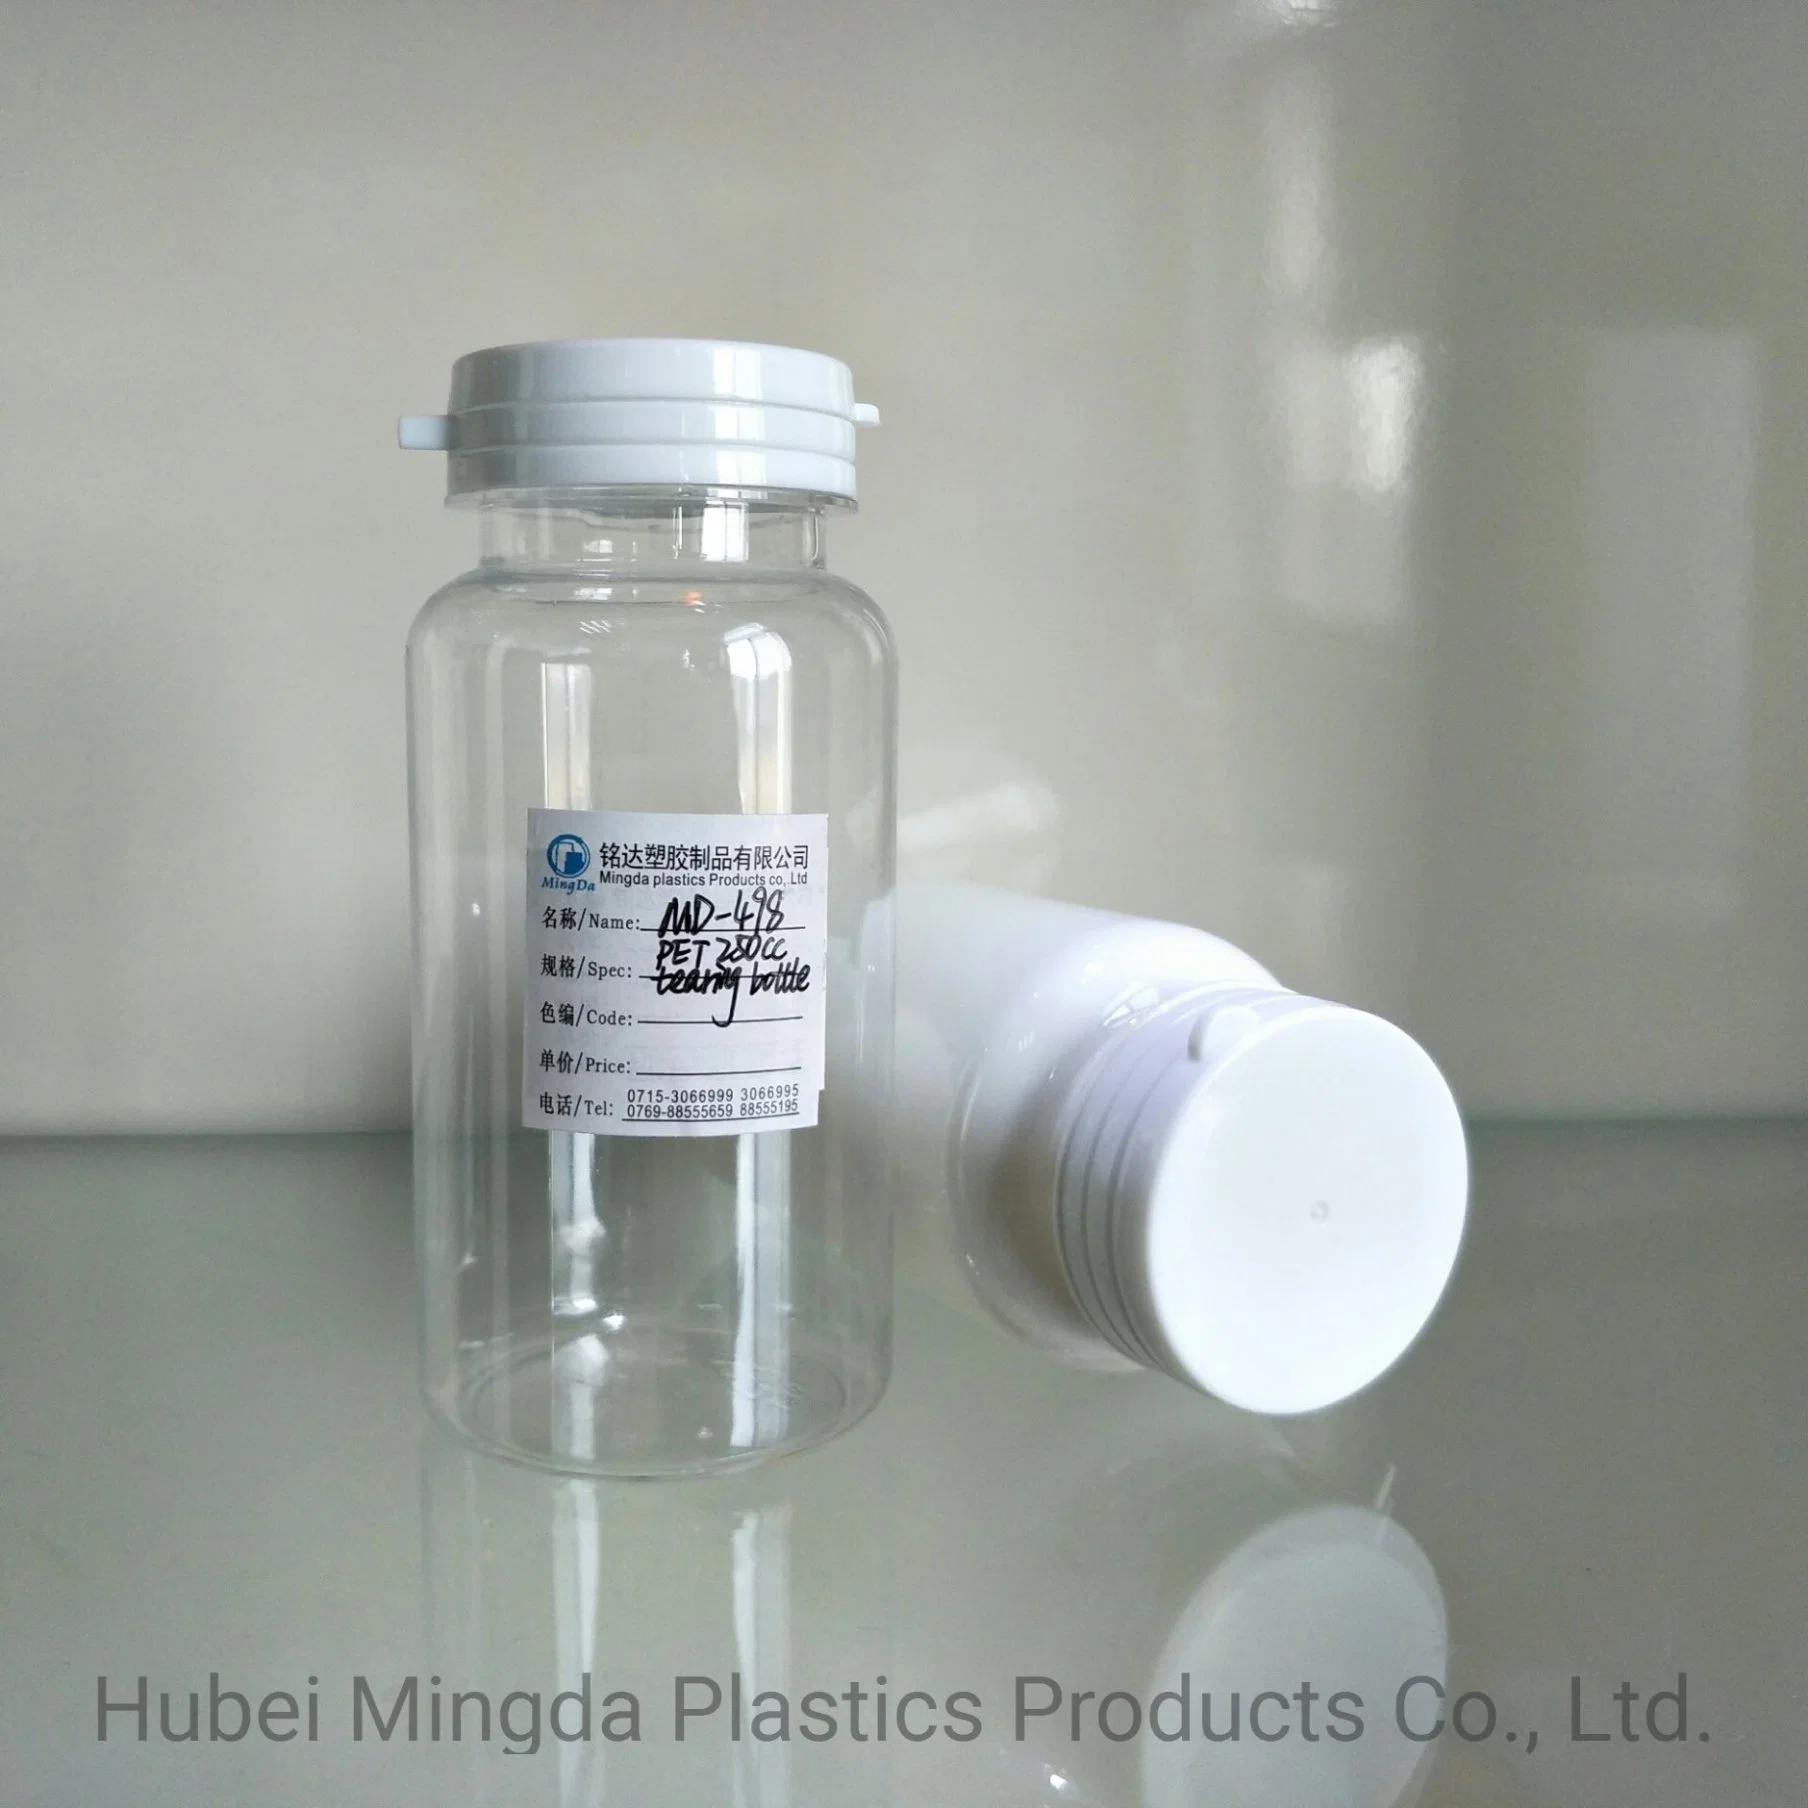 PET/HDPE MD-498 زجاجة بلاستيكية سعة 200 مل للطب/الطعام/منتجات الرعاية الصحية التعبئة والتغليف